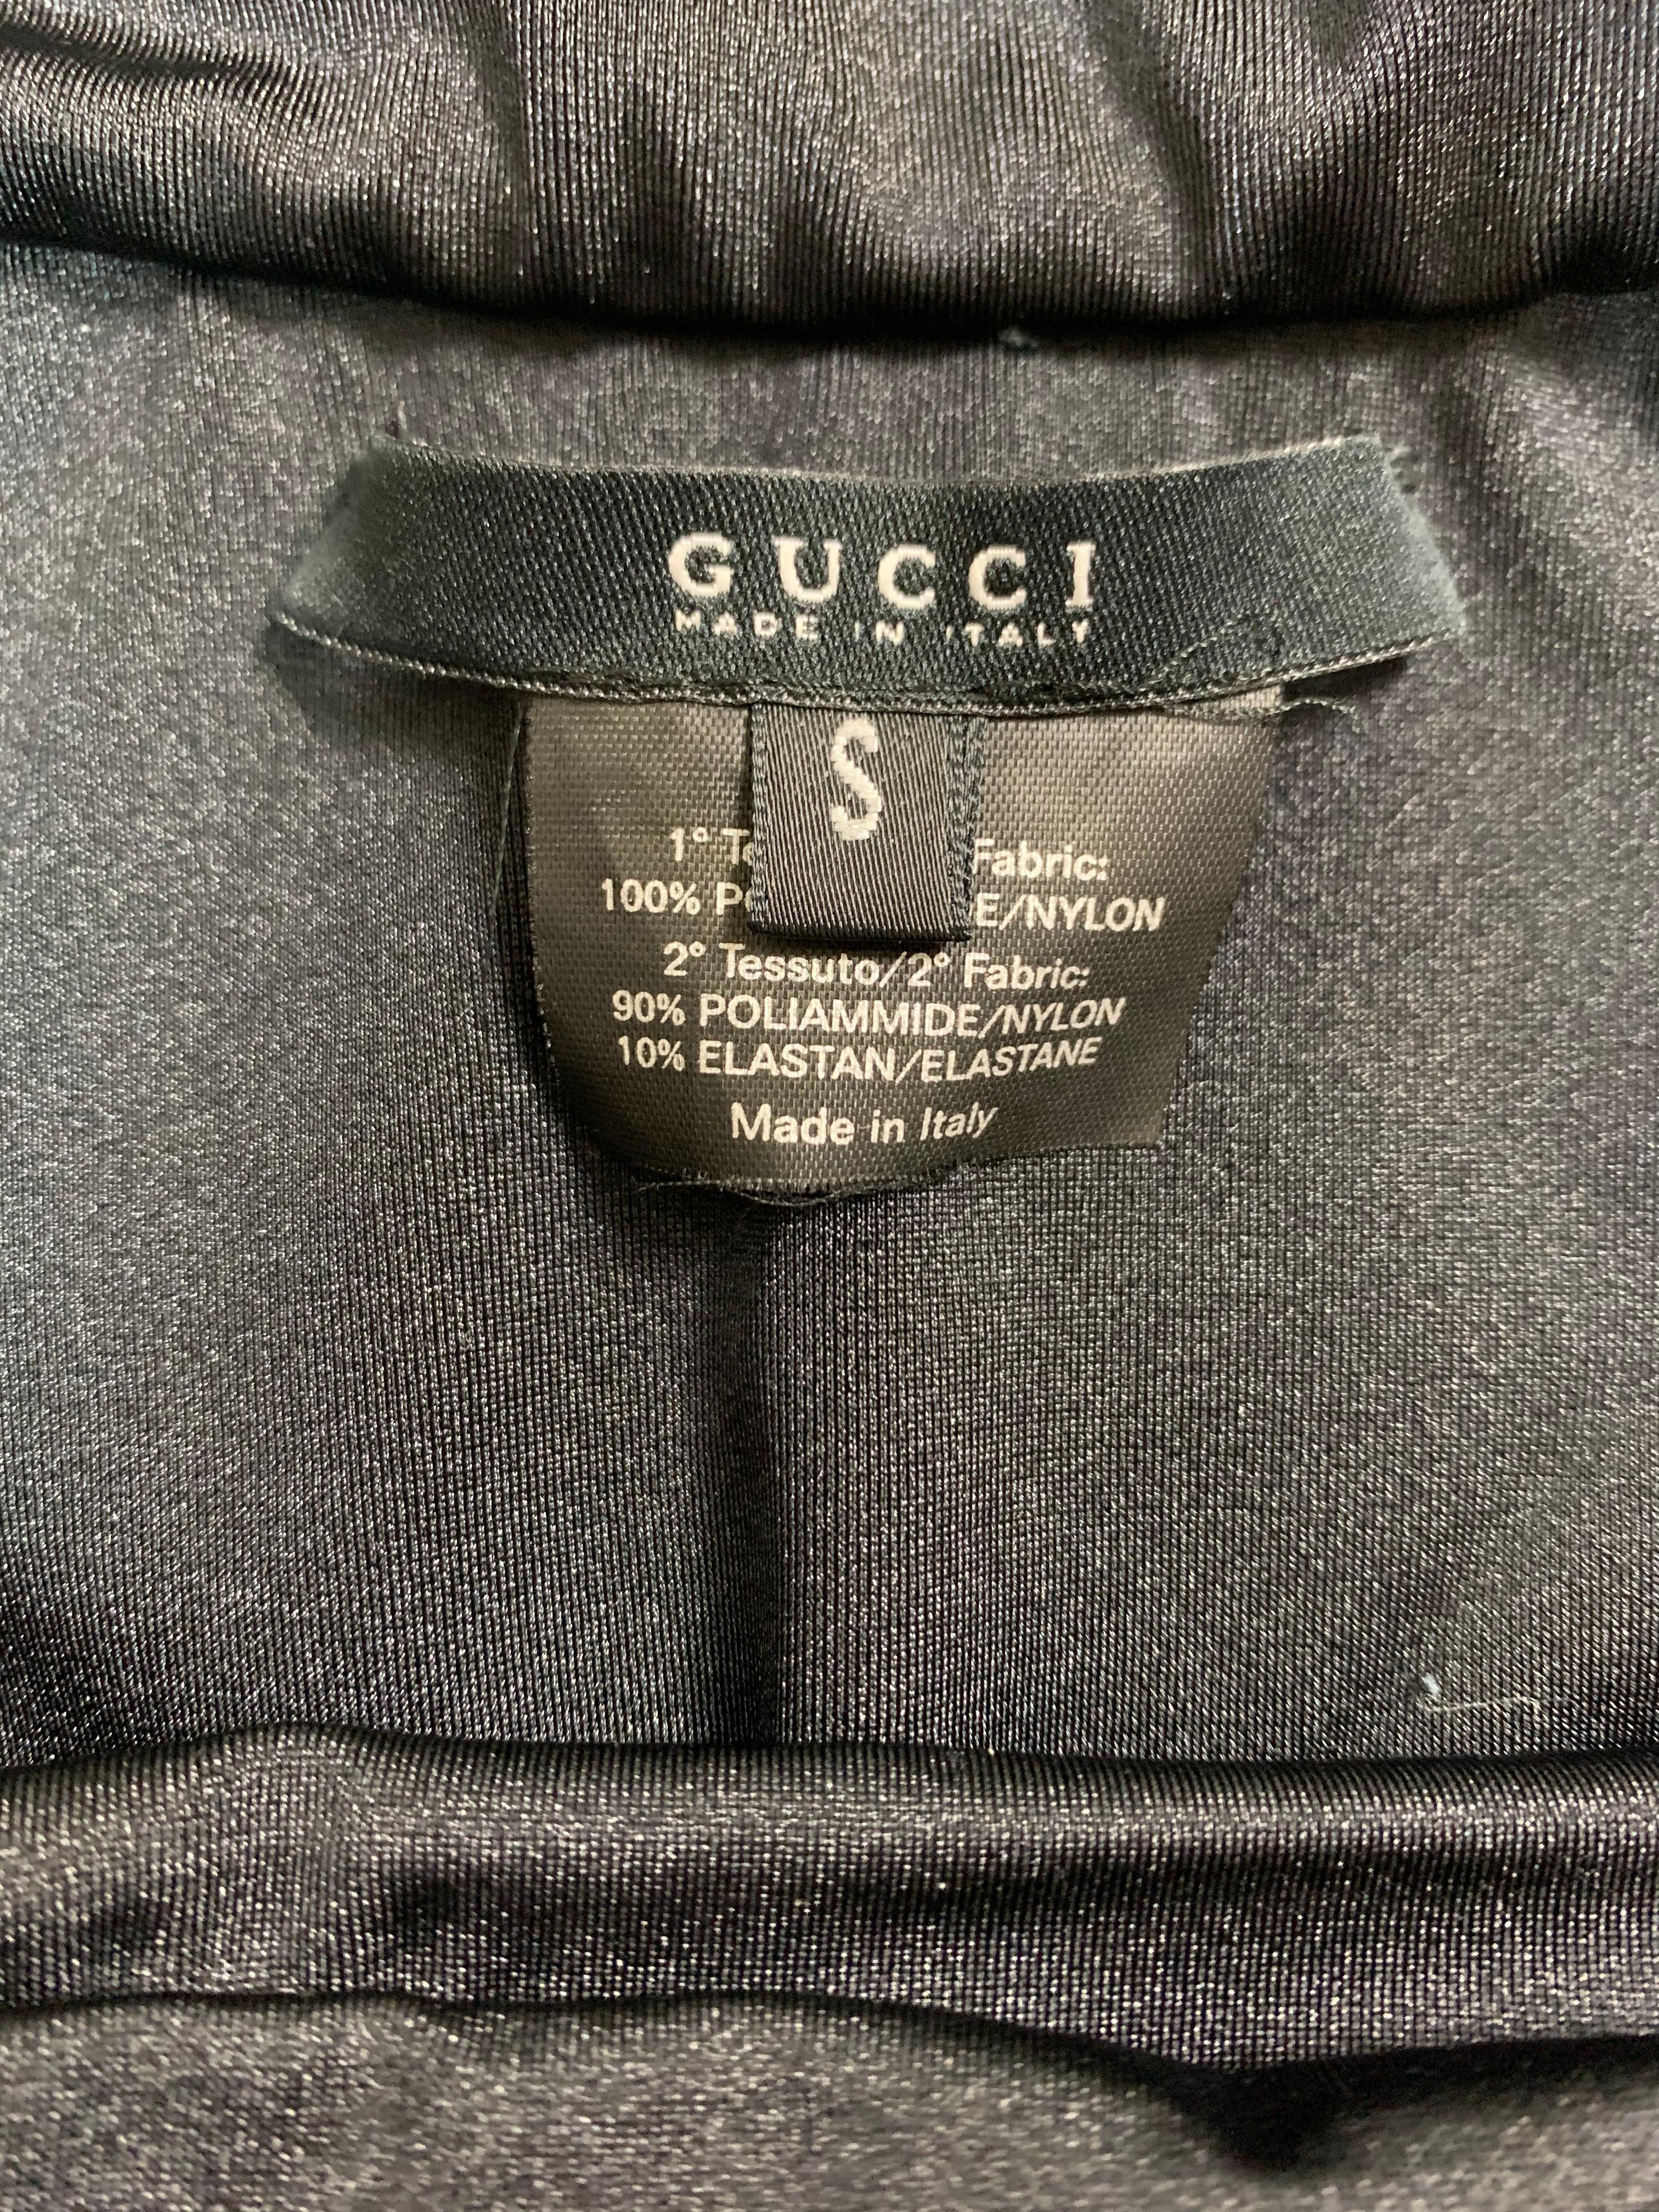 Women's S/S 2005 Gucci Black Cut-Out Tie-Up Swimsuit Bodysuit